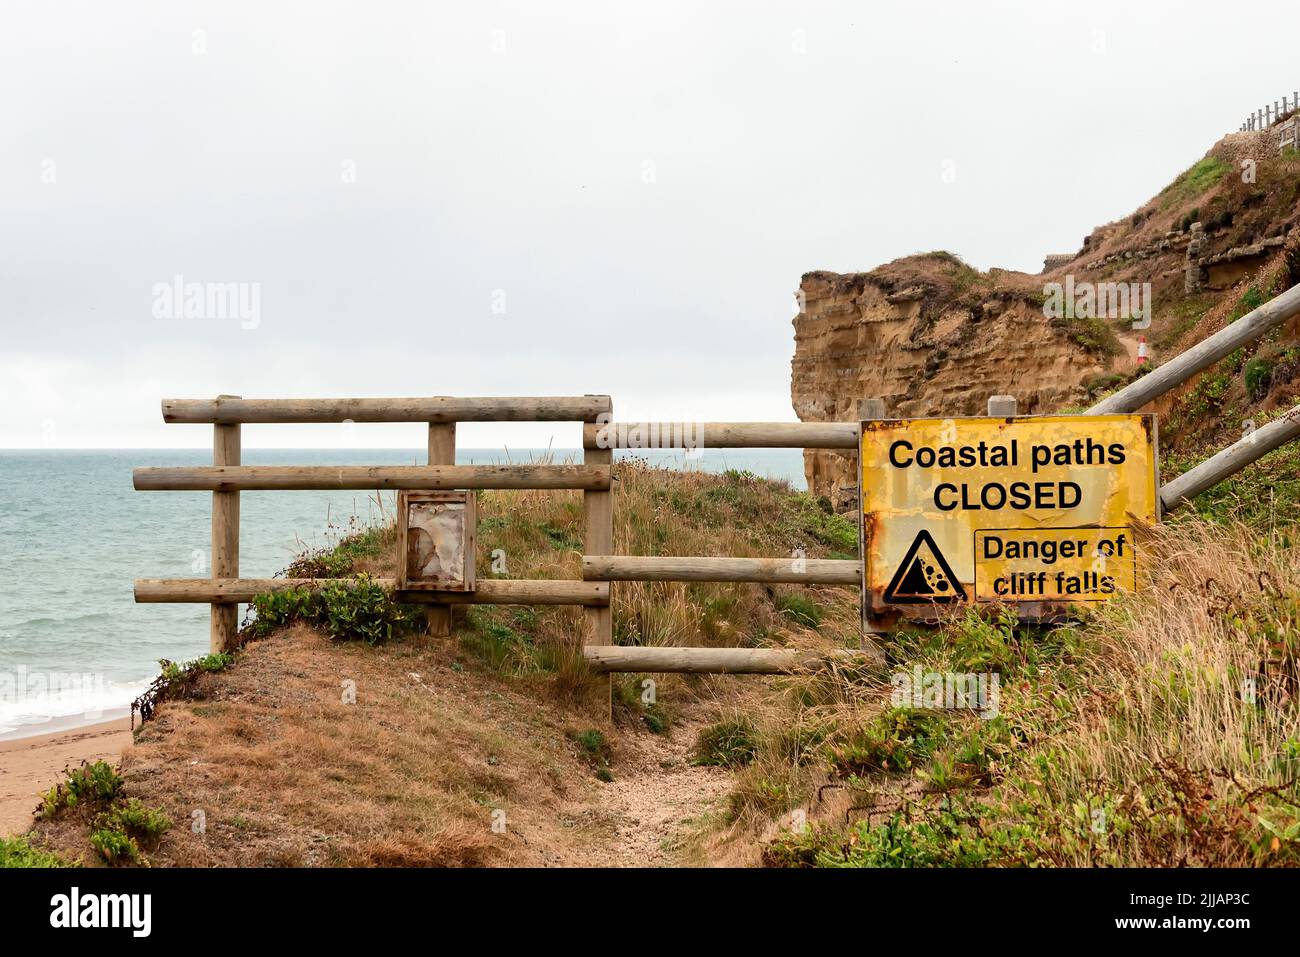 Señal: Camino costero cerrado - peligro de caídas de acantilados Foto de stock